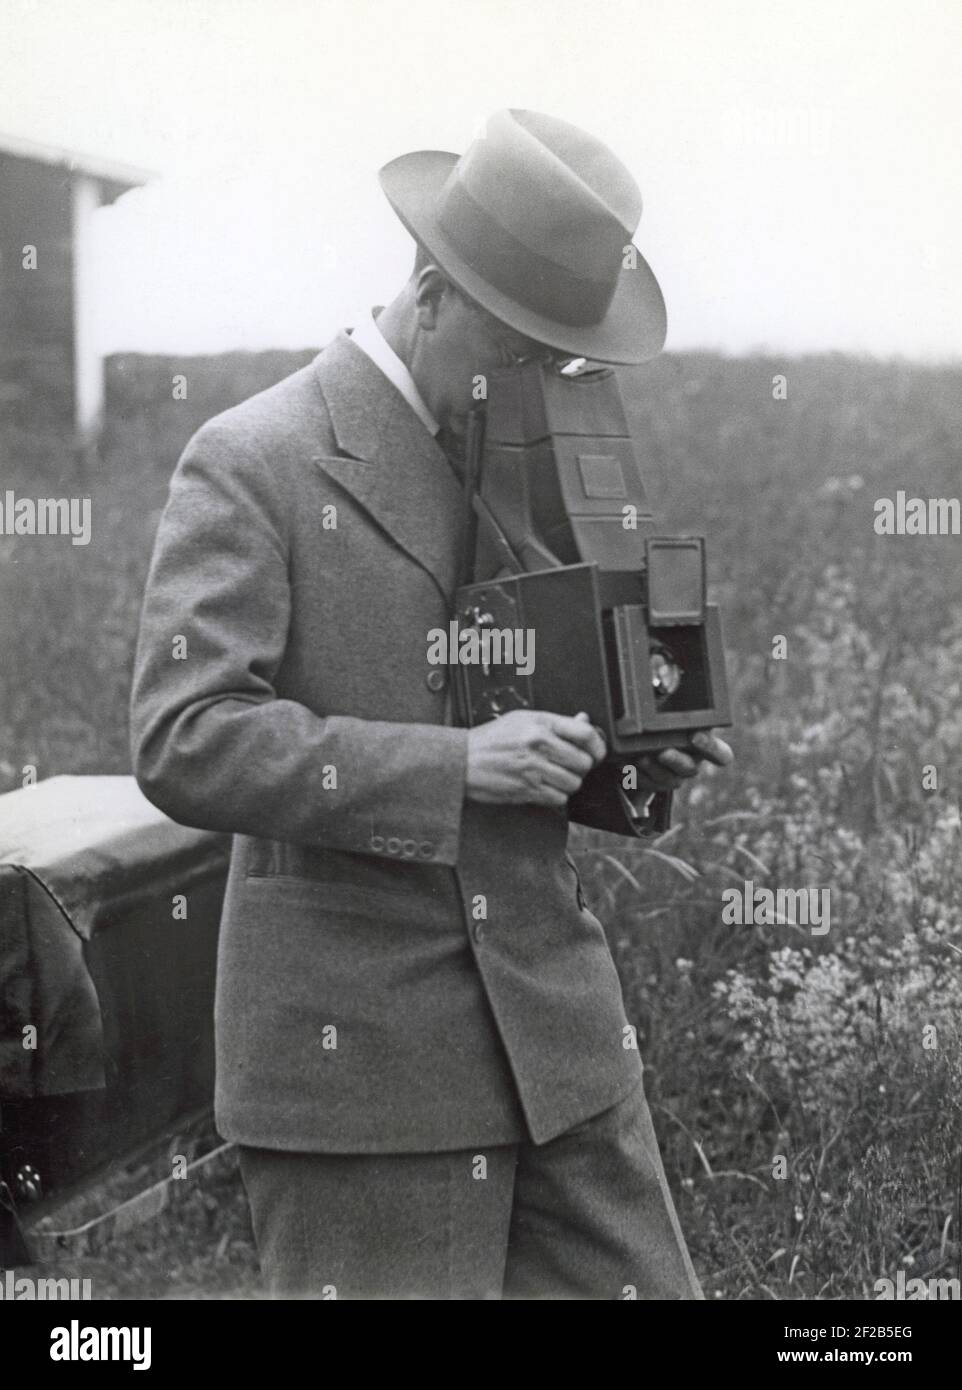 Kameraverlauf. Als Kronprinz von Schweden war Gustaf Adolf ein begeisterter Amateurfotograf. Hier mit seiner Kamera auf jemanden ausgerichtet. Schweden 1930s Stockfoto